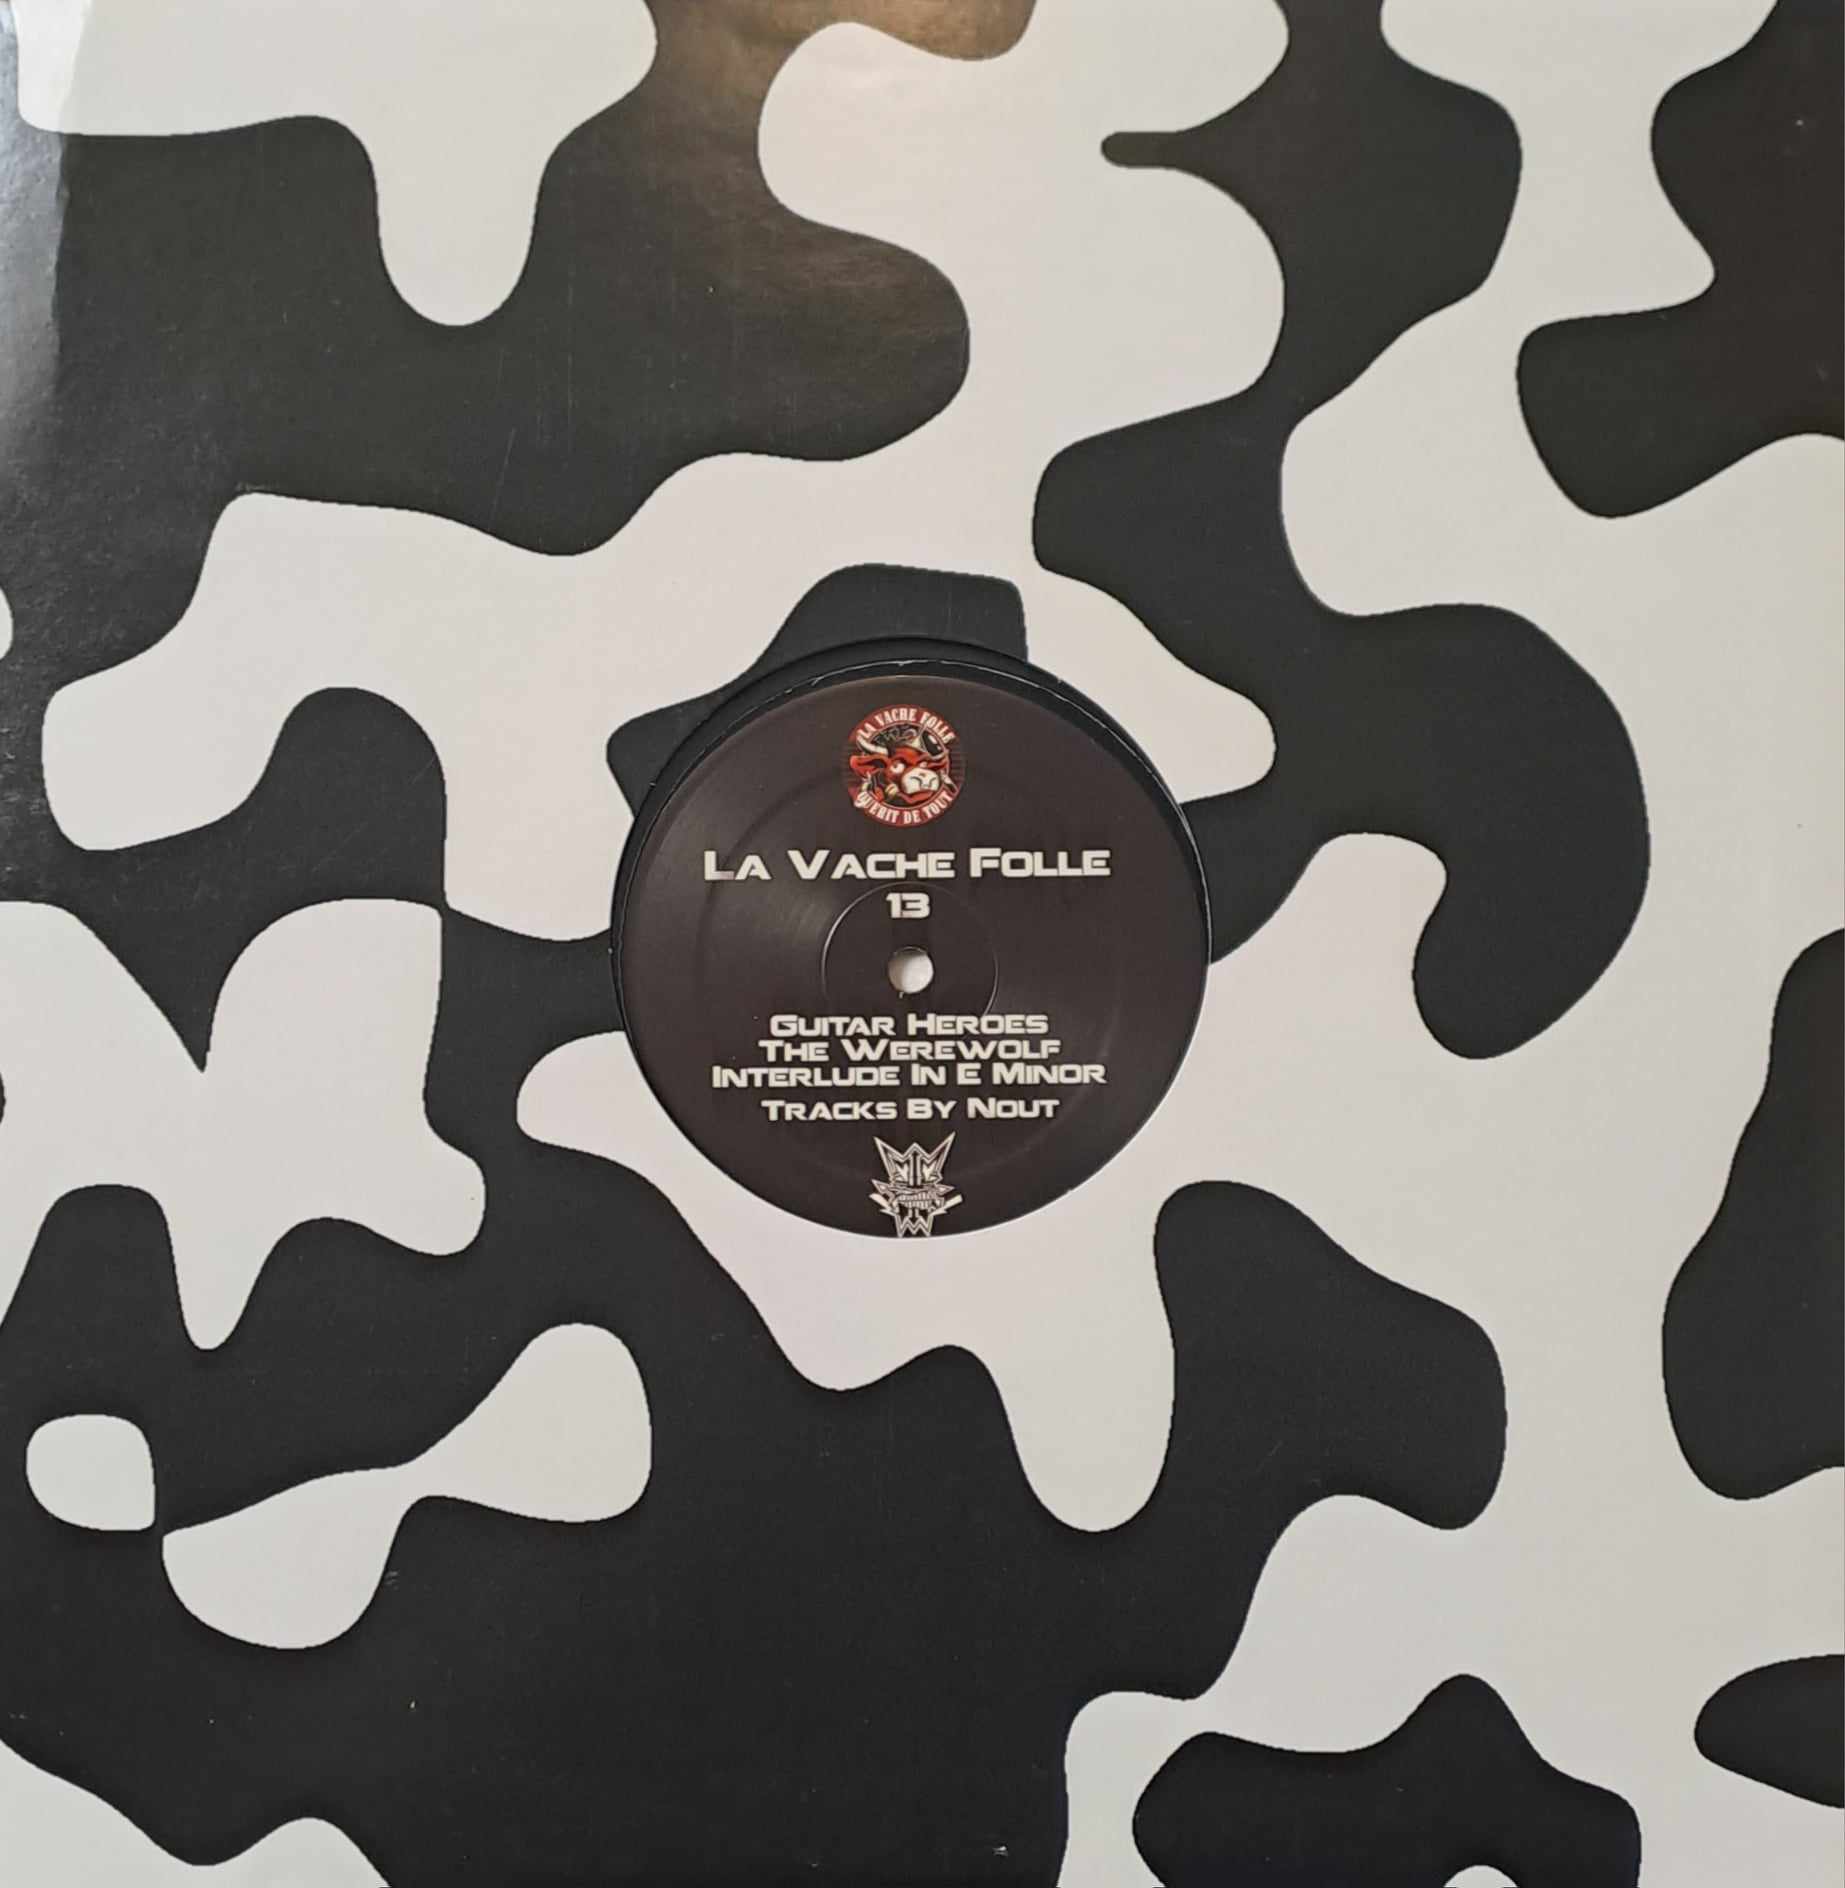 La Vache Folle 13 (original de 2018) - vinyle tribecore